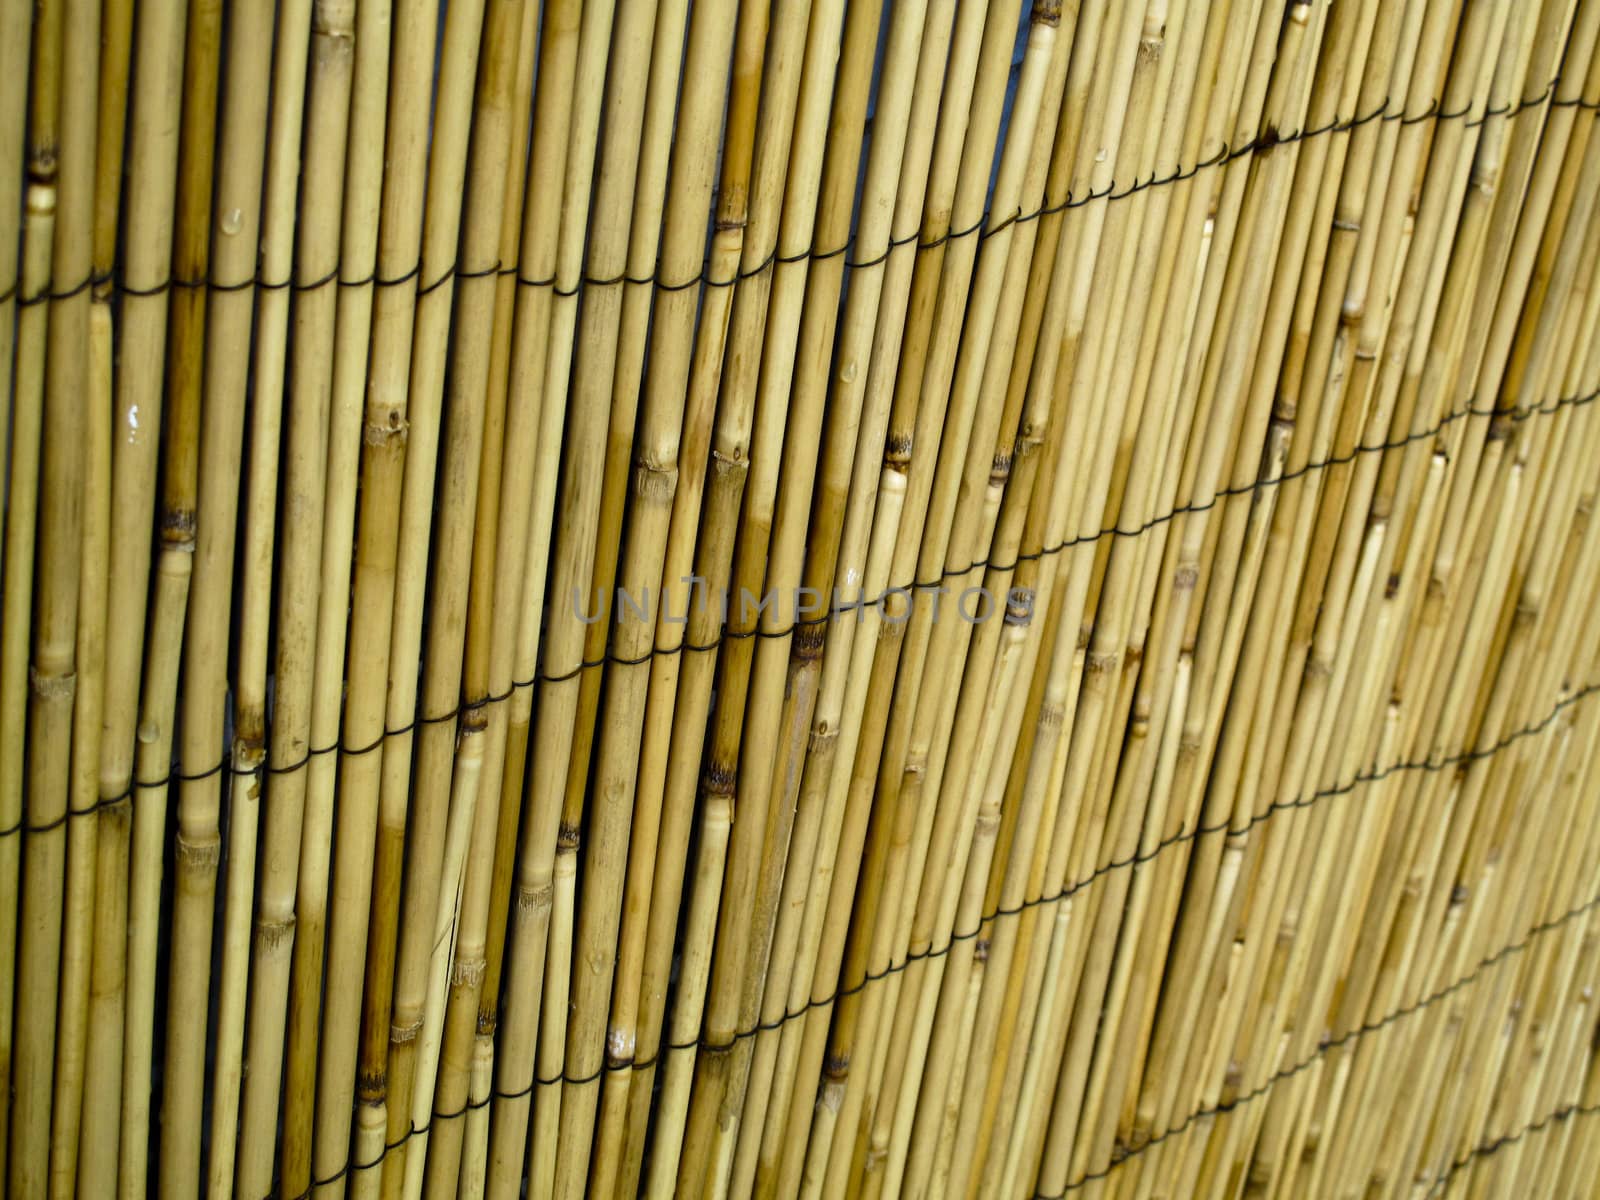 Closeup of an urban bamboo fence